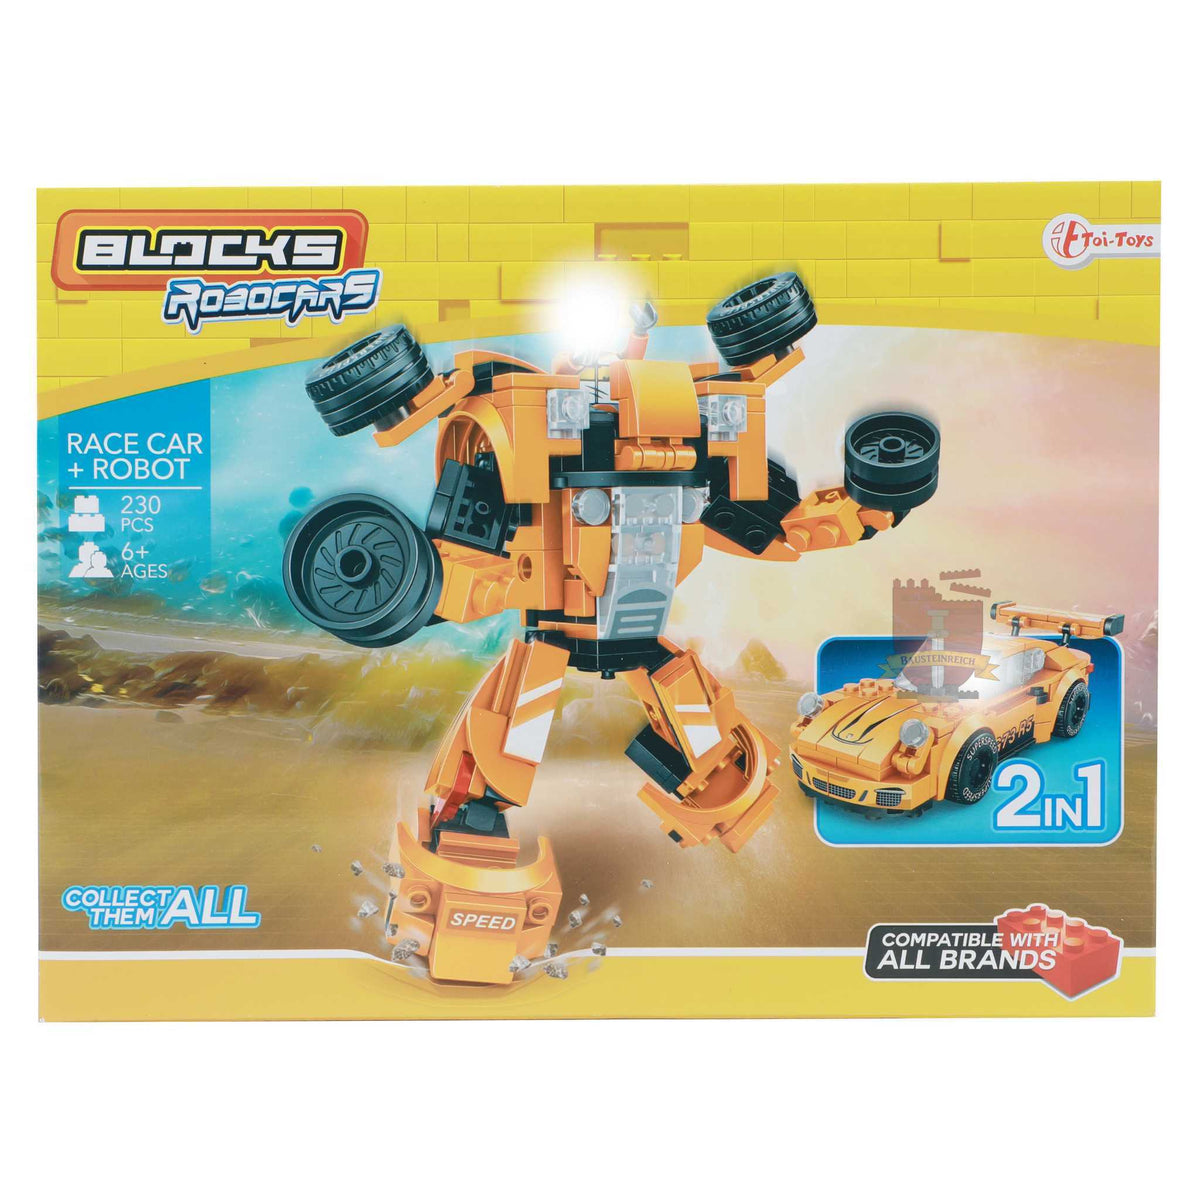 43154OR-Race Car + Robot orange 2 in1